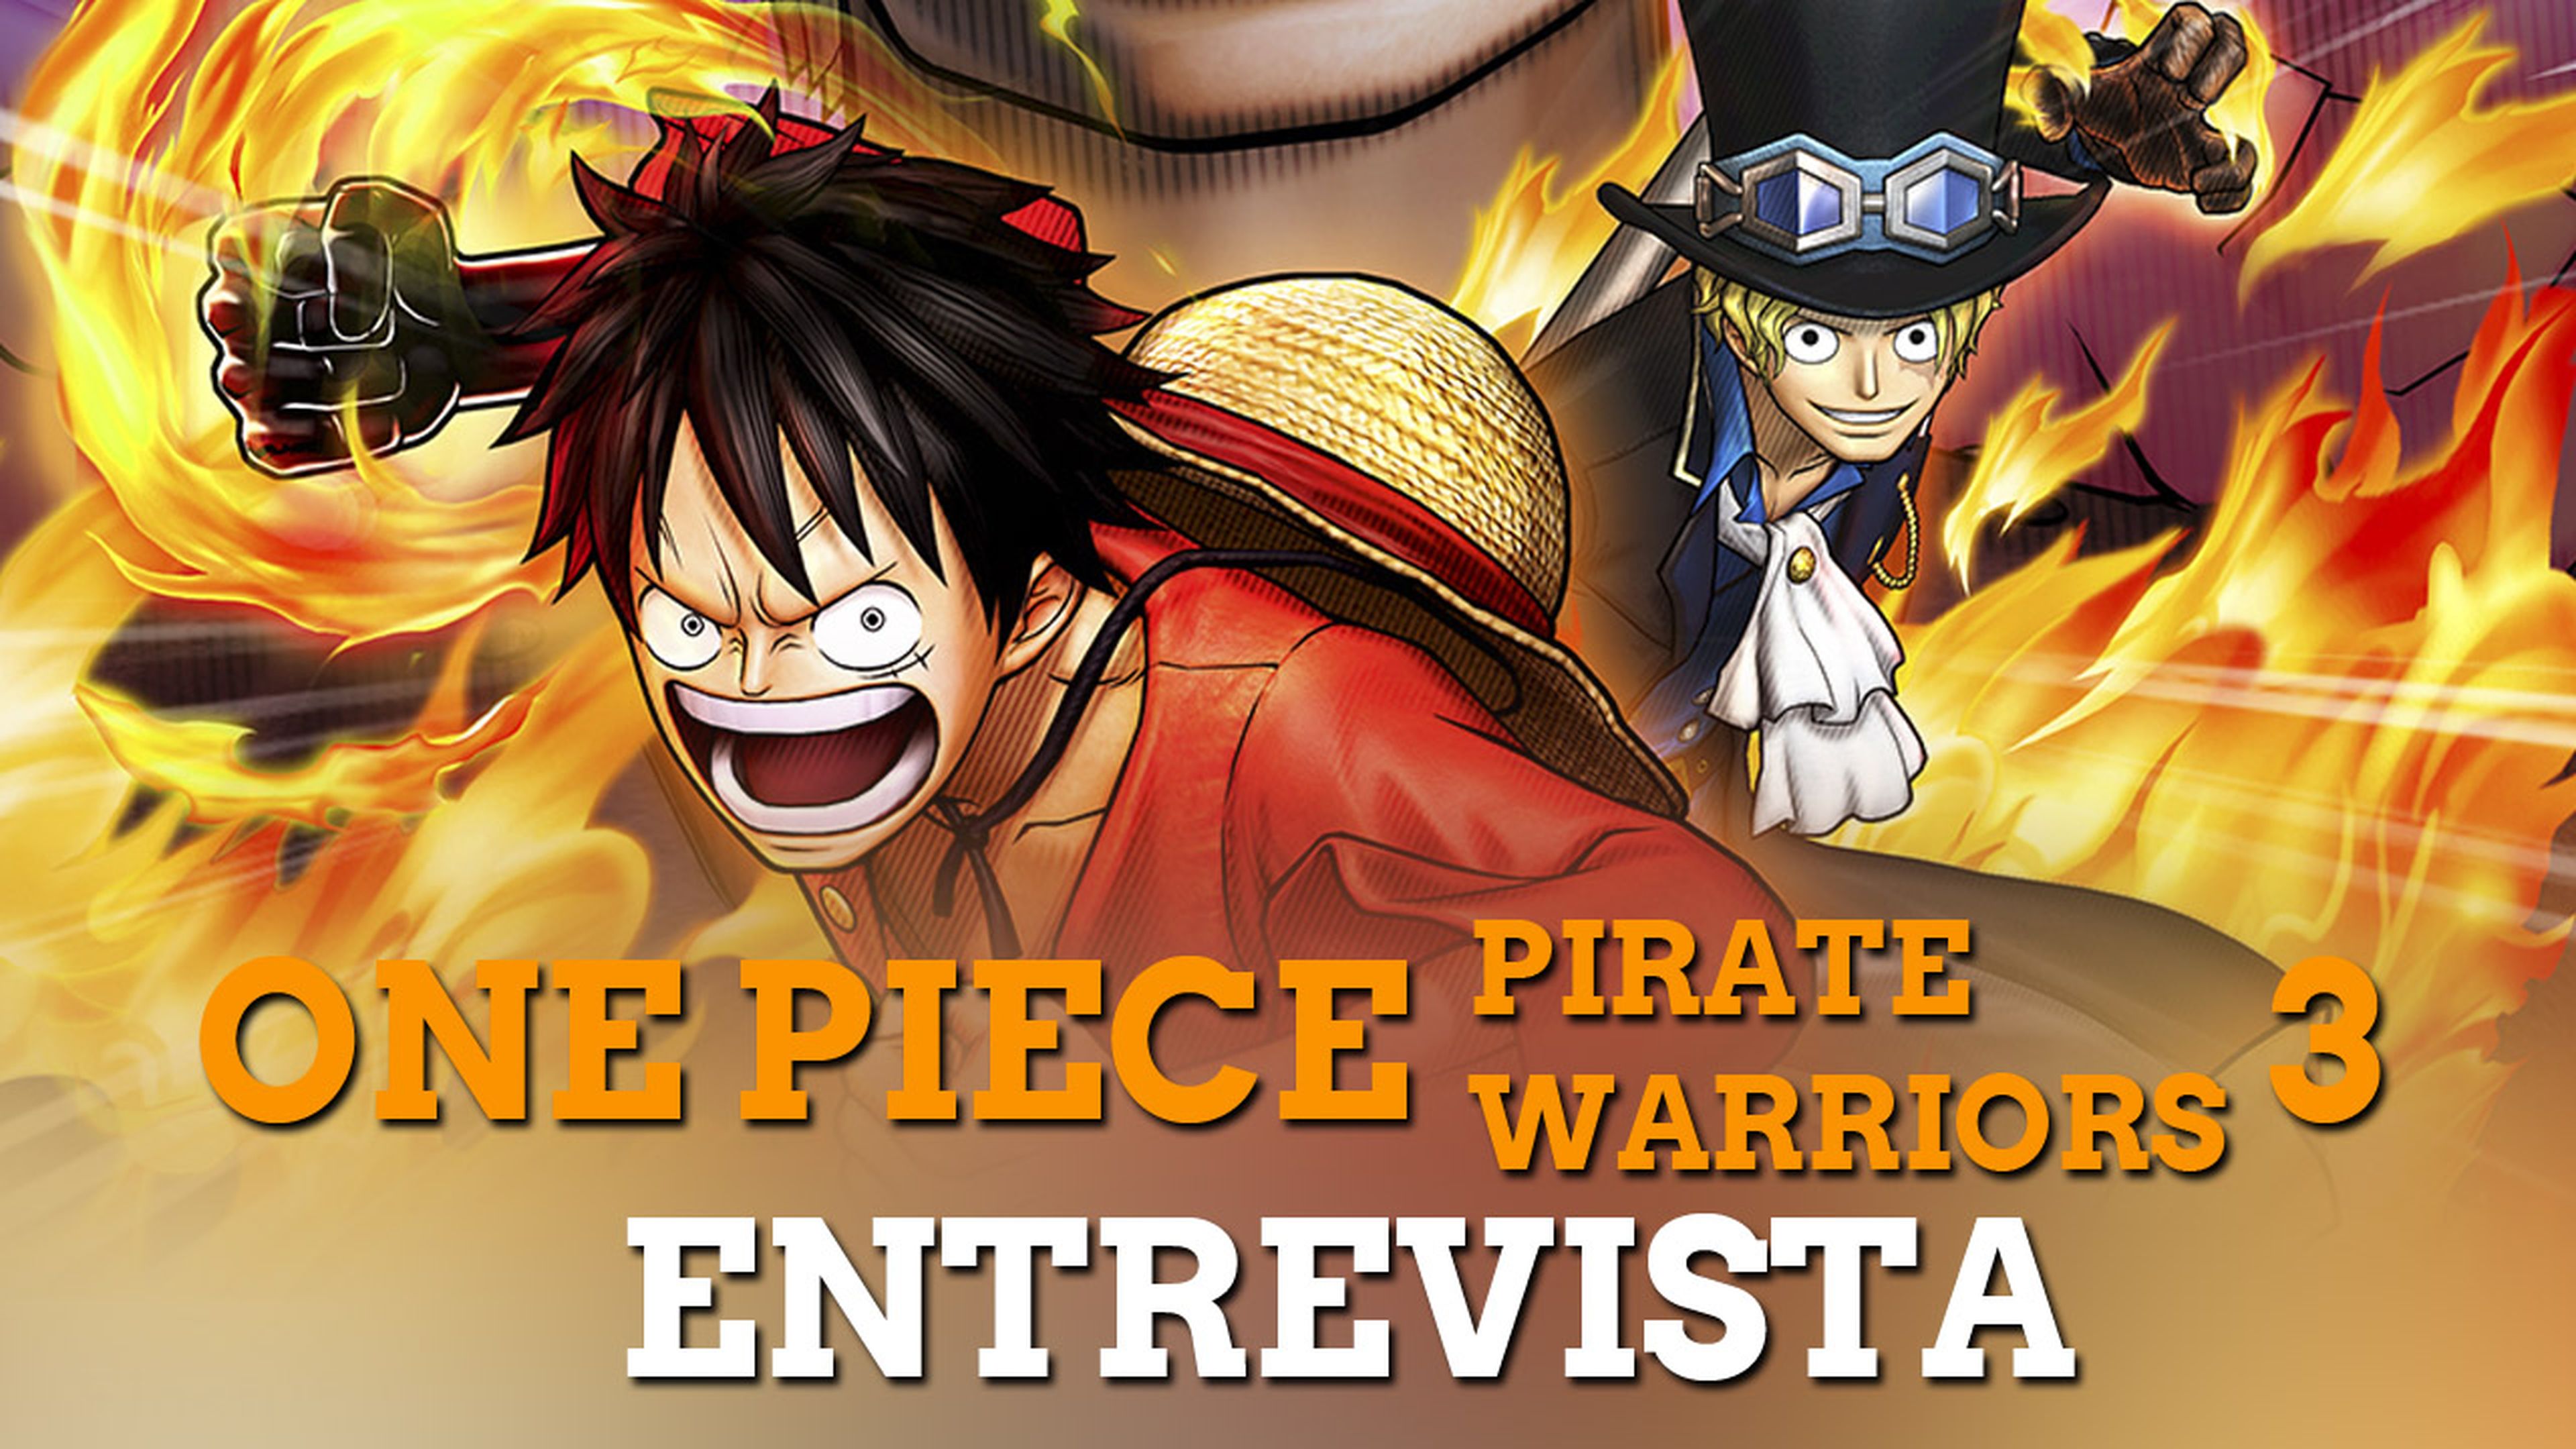 Entrevista One Piece Pirate Warriors 3